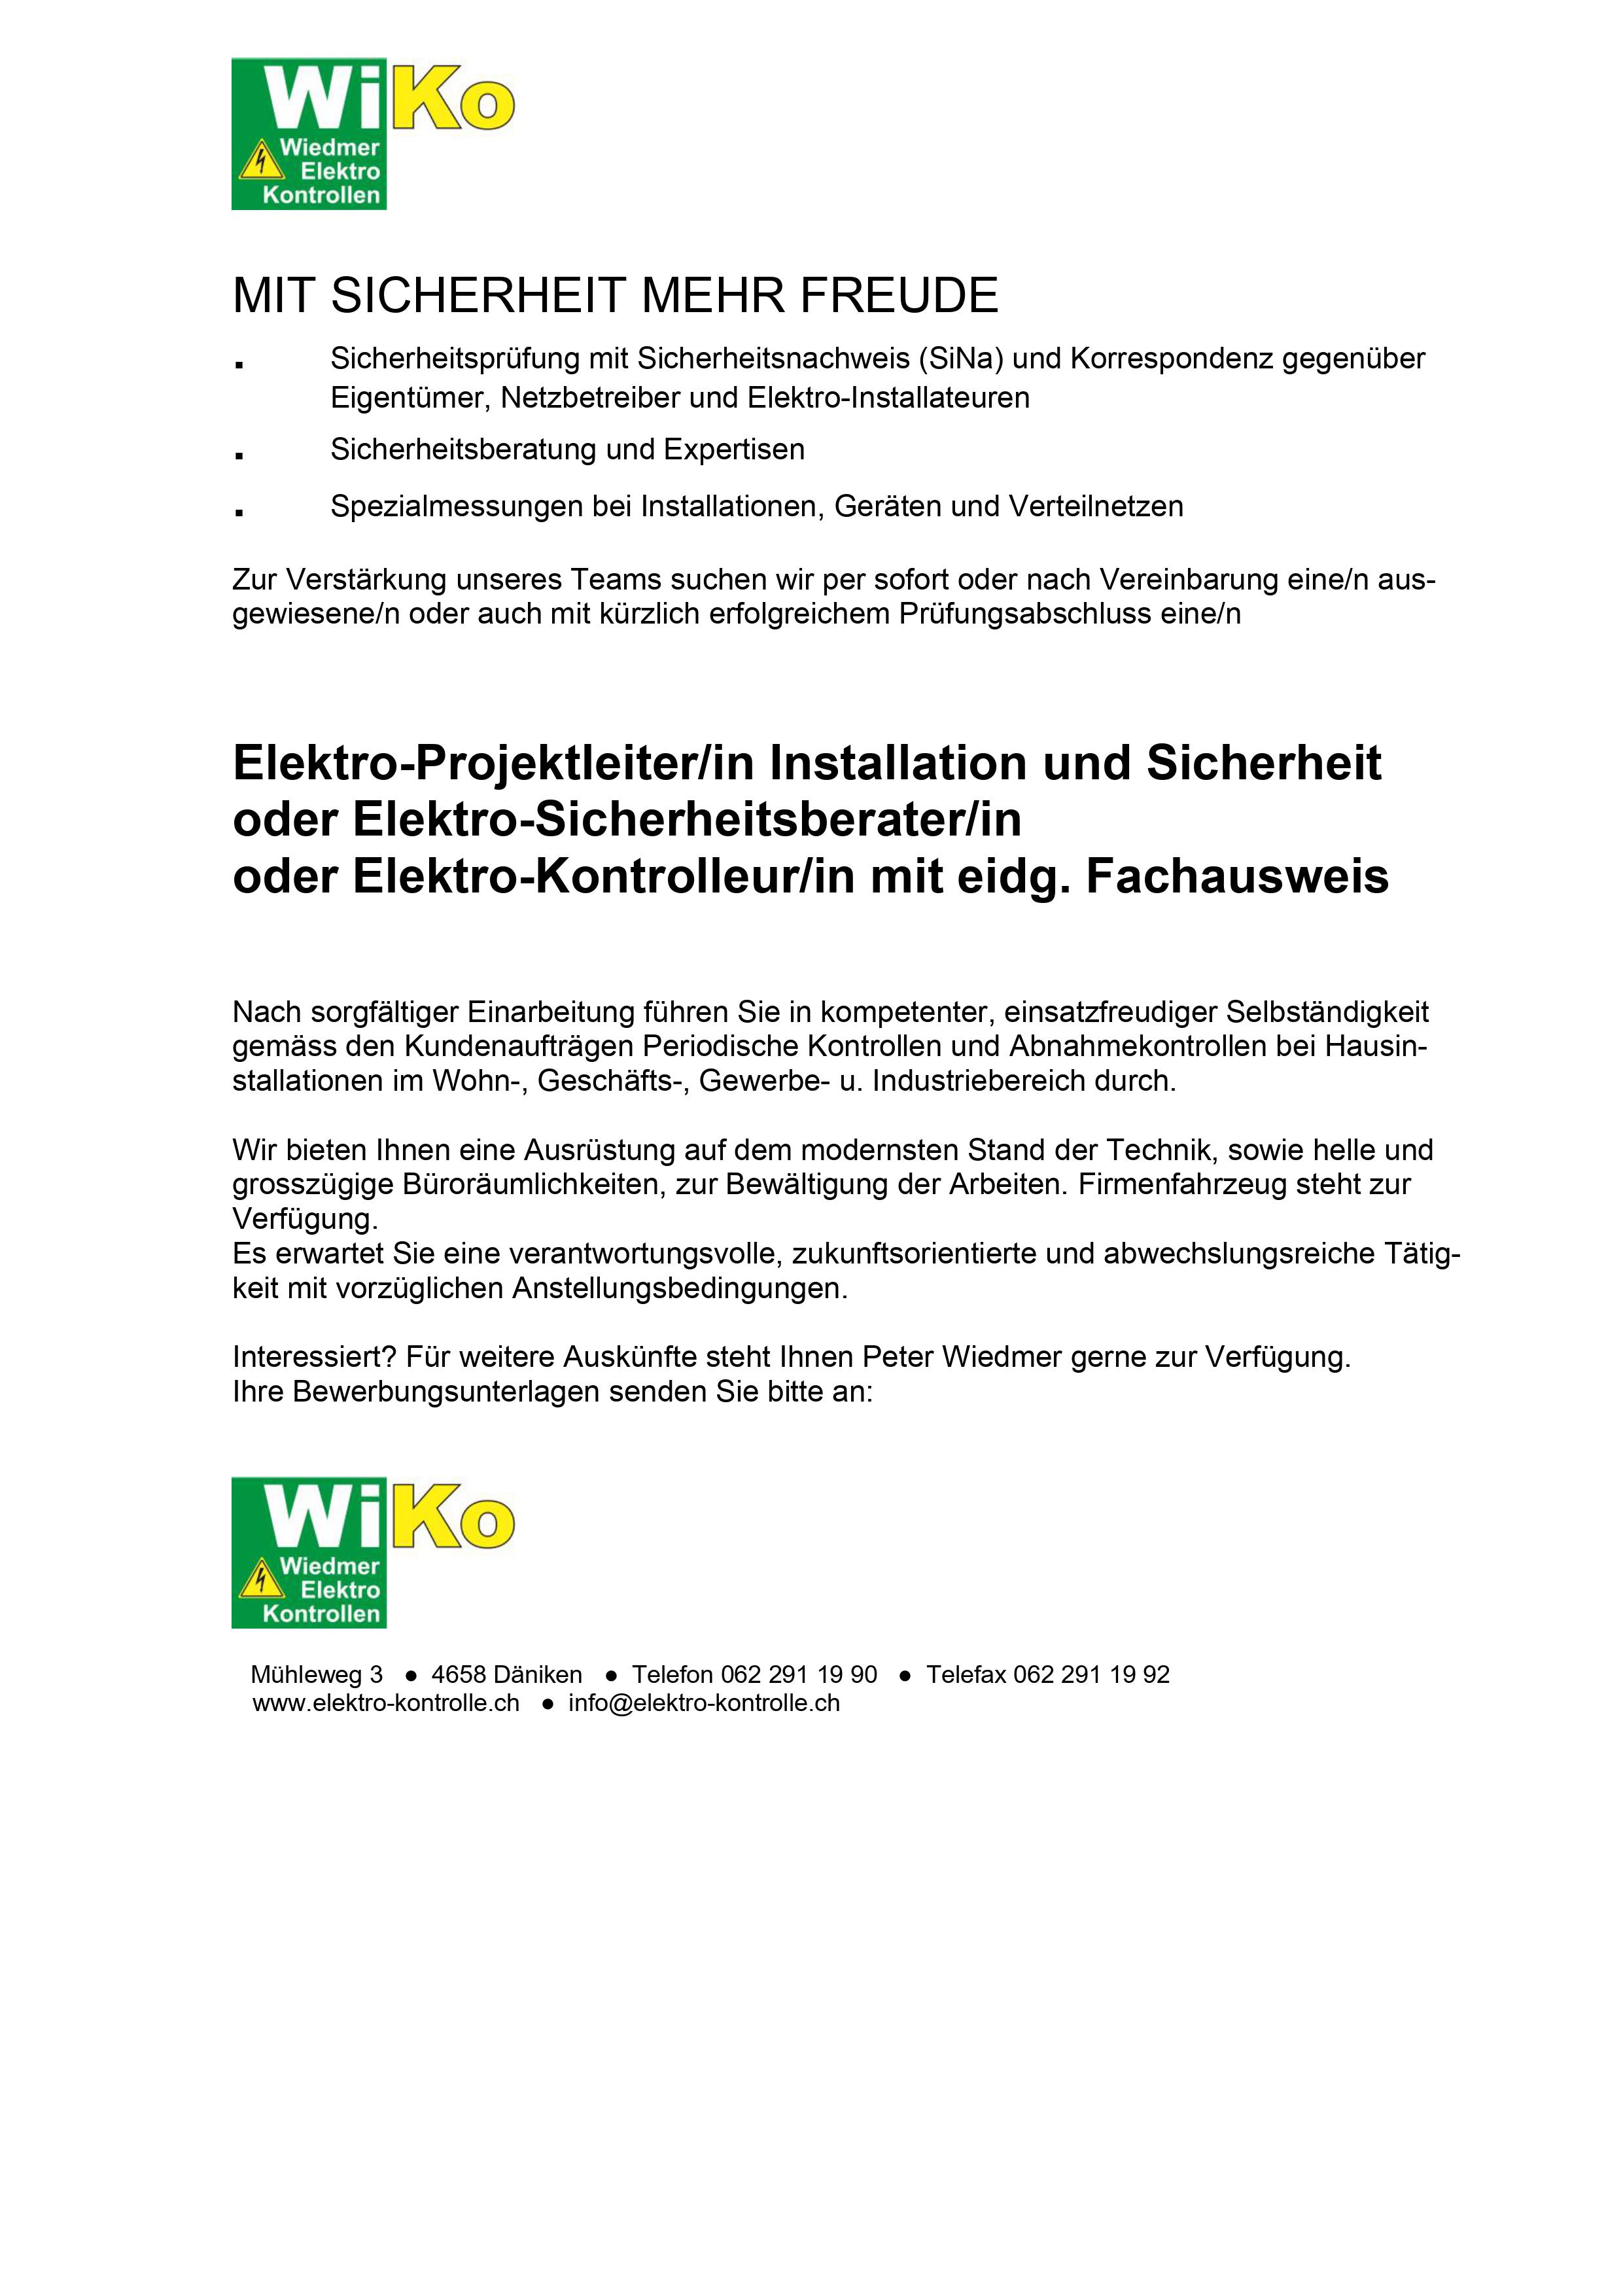 Bilder WiKo Wiedmer Elektro-Kontrollen GmbH